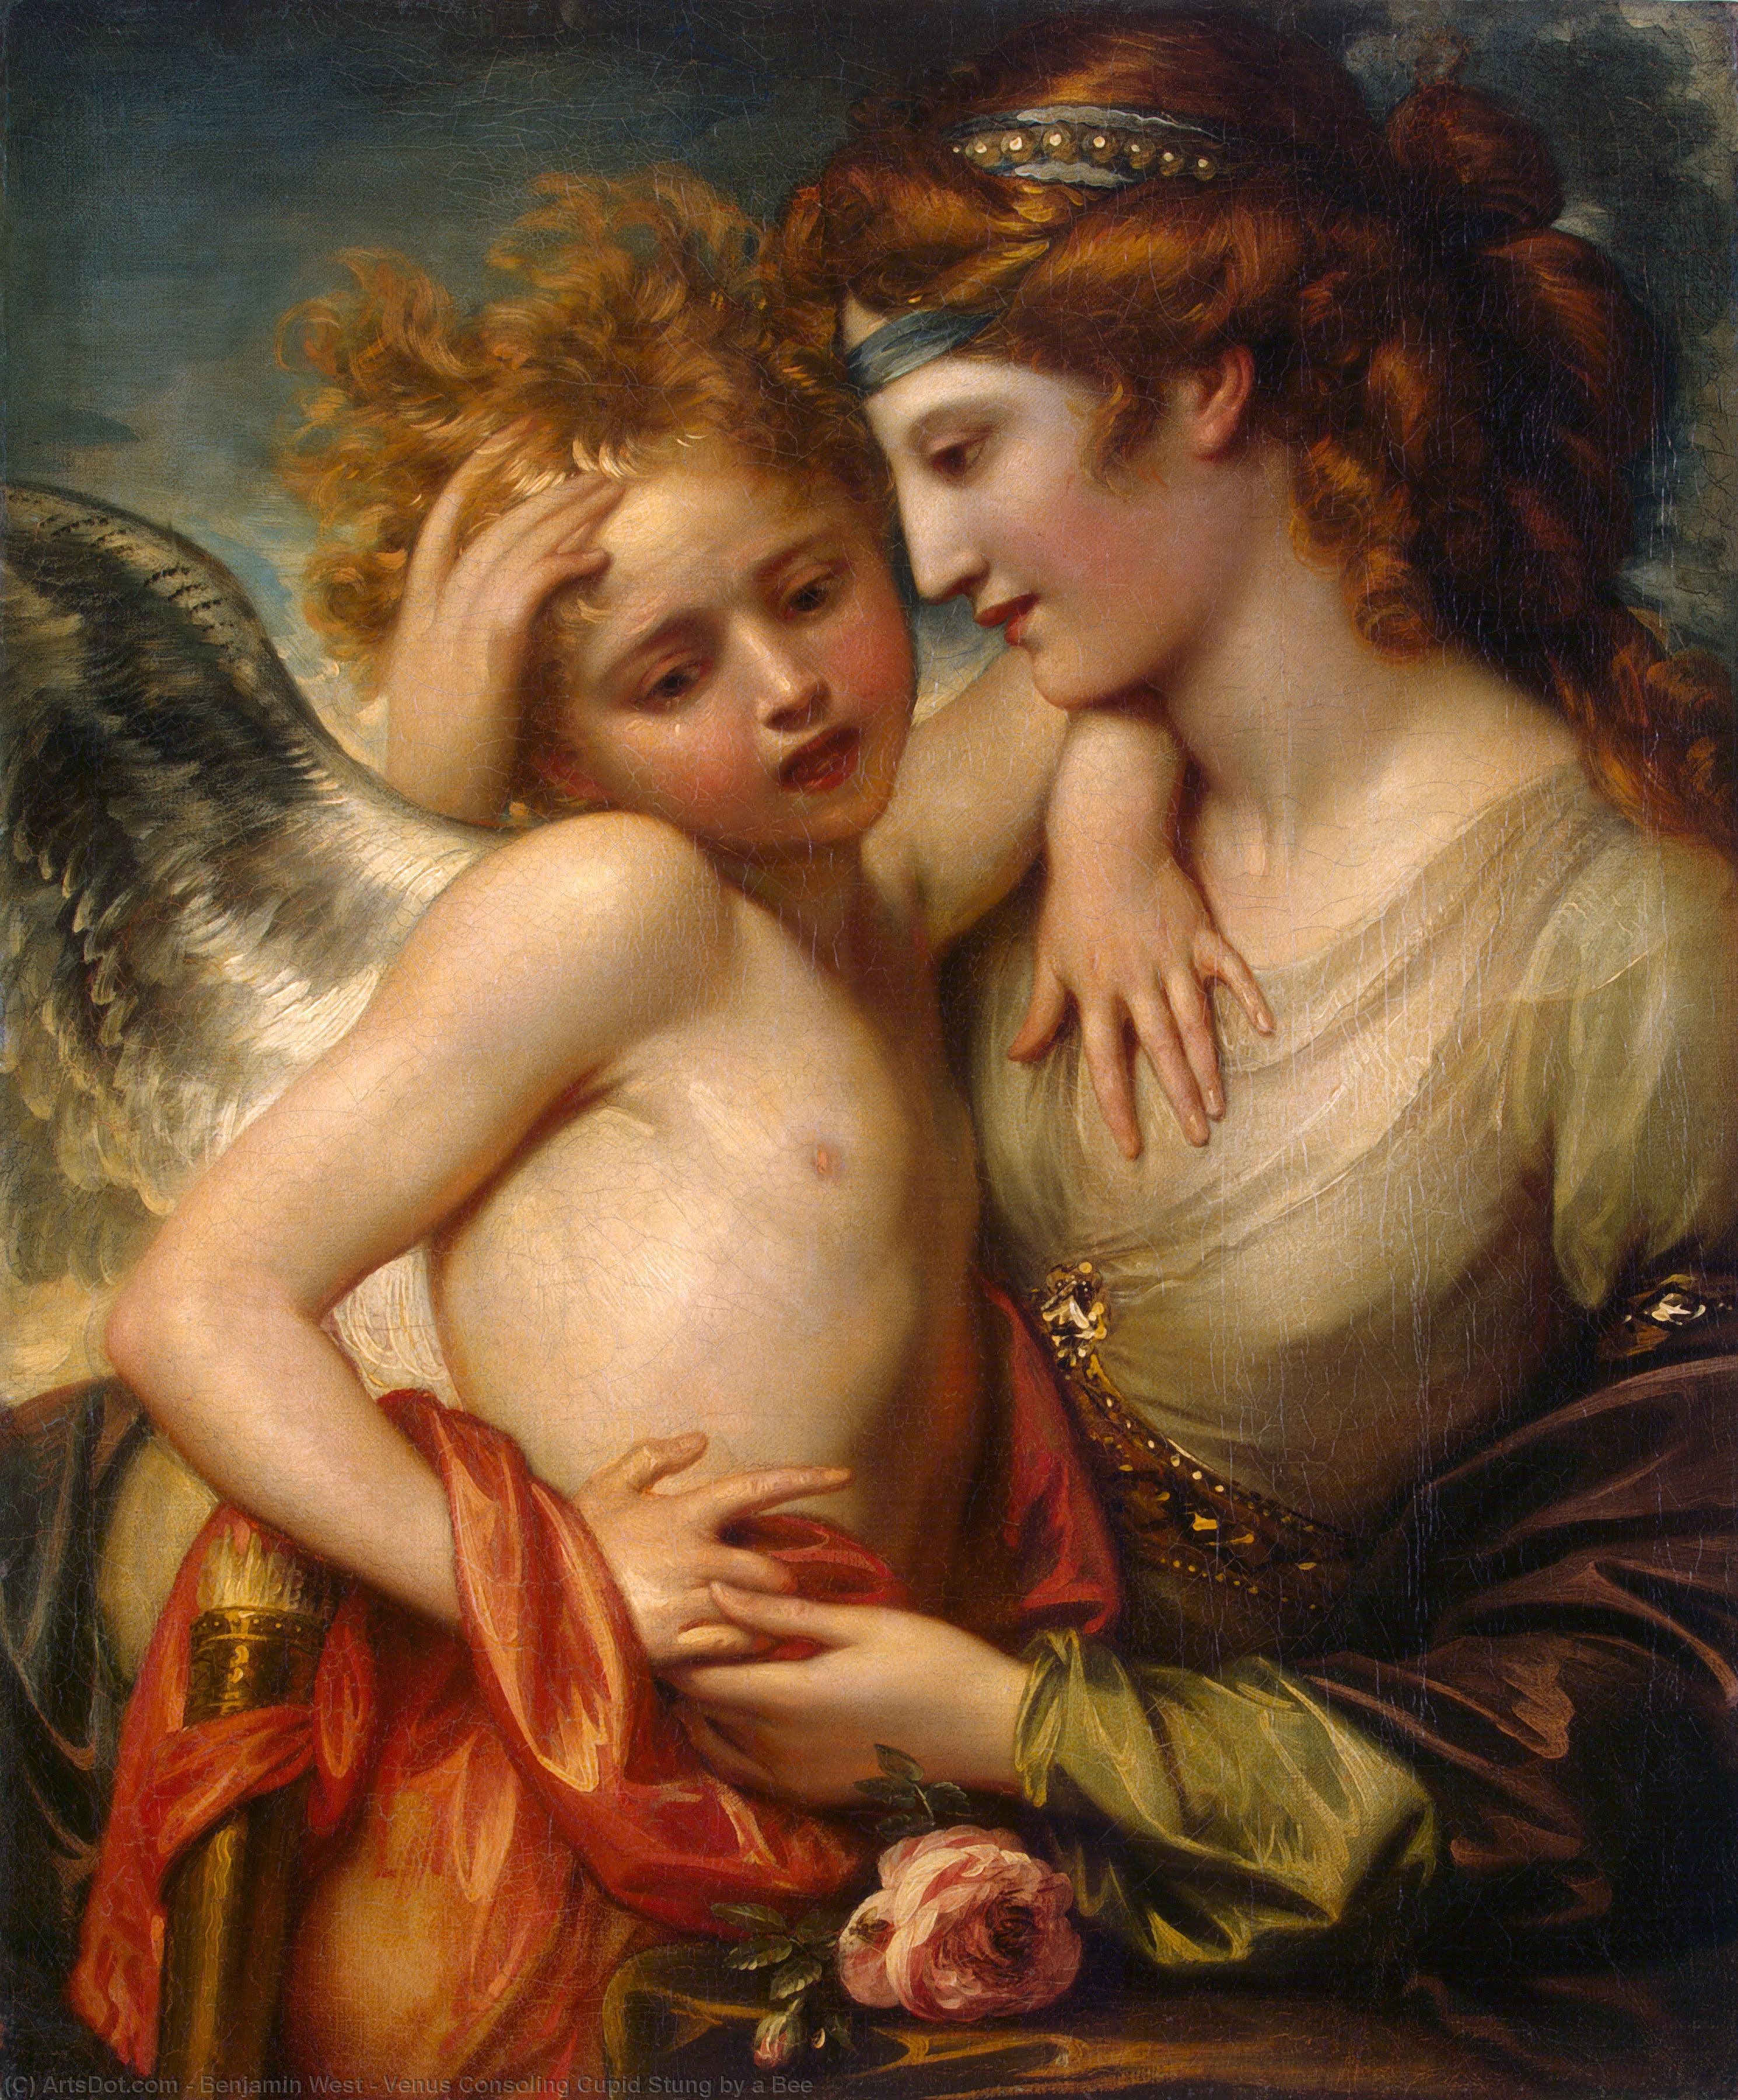 Wikoo.org - موسوعة الفنون الجميلة - اللوحة، العمل الفني Benjamin West - Venus Consoling Cupid Stung by a Bee